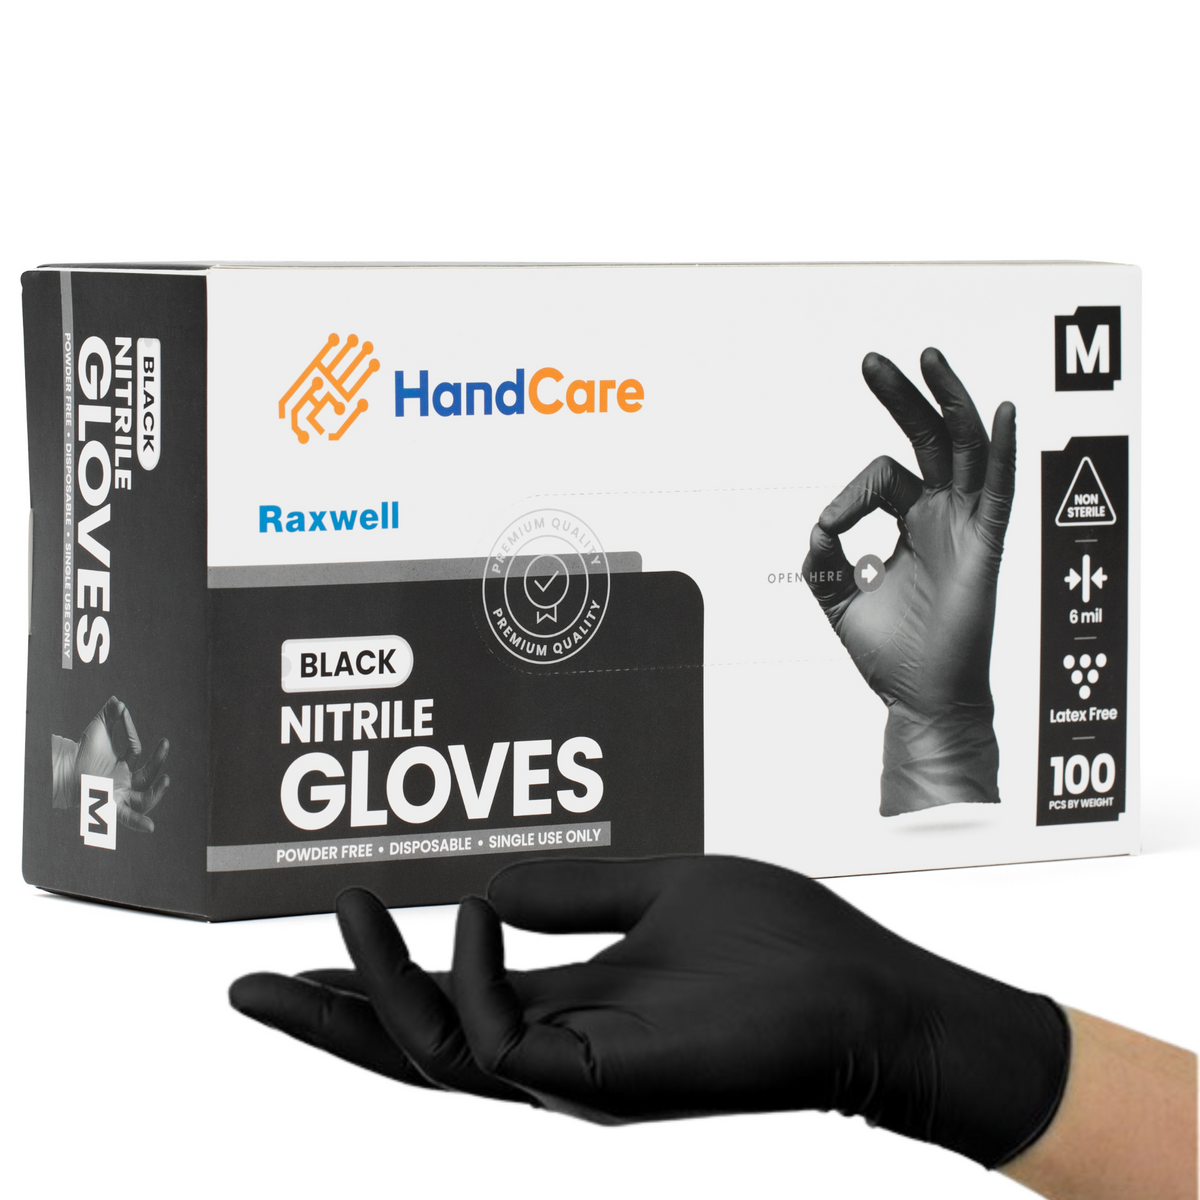 HandCare Black Nitrile Gloves - Exam Grade, Powder Free (6 Mil) 100 Cases (Bulk)